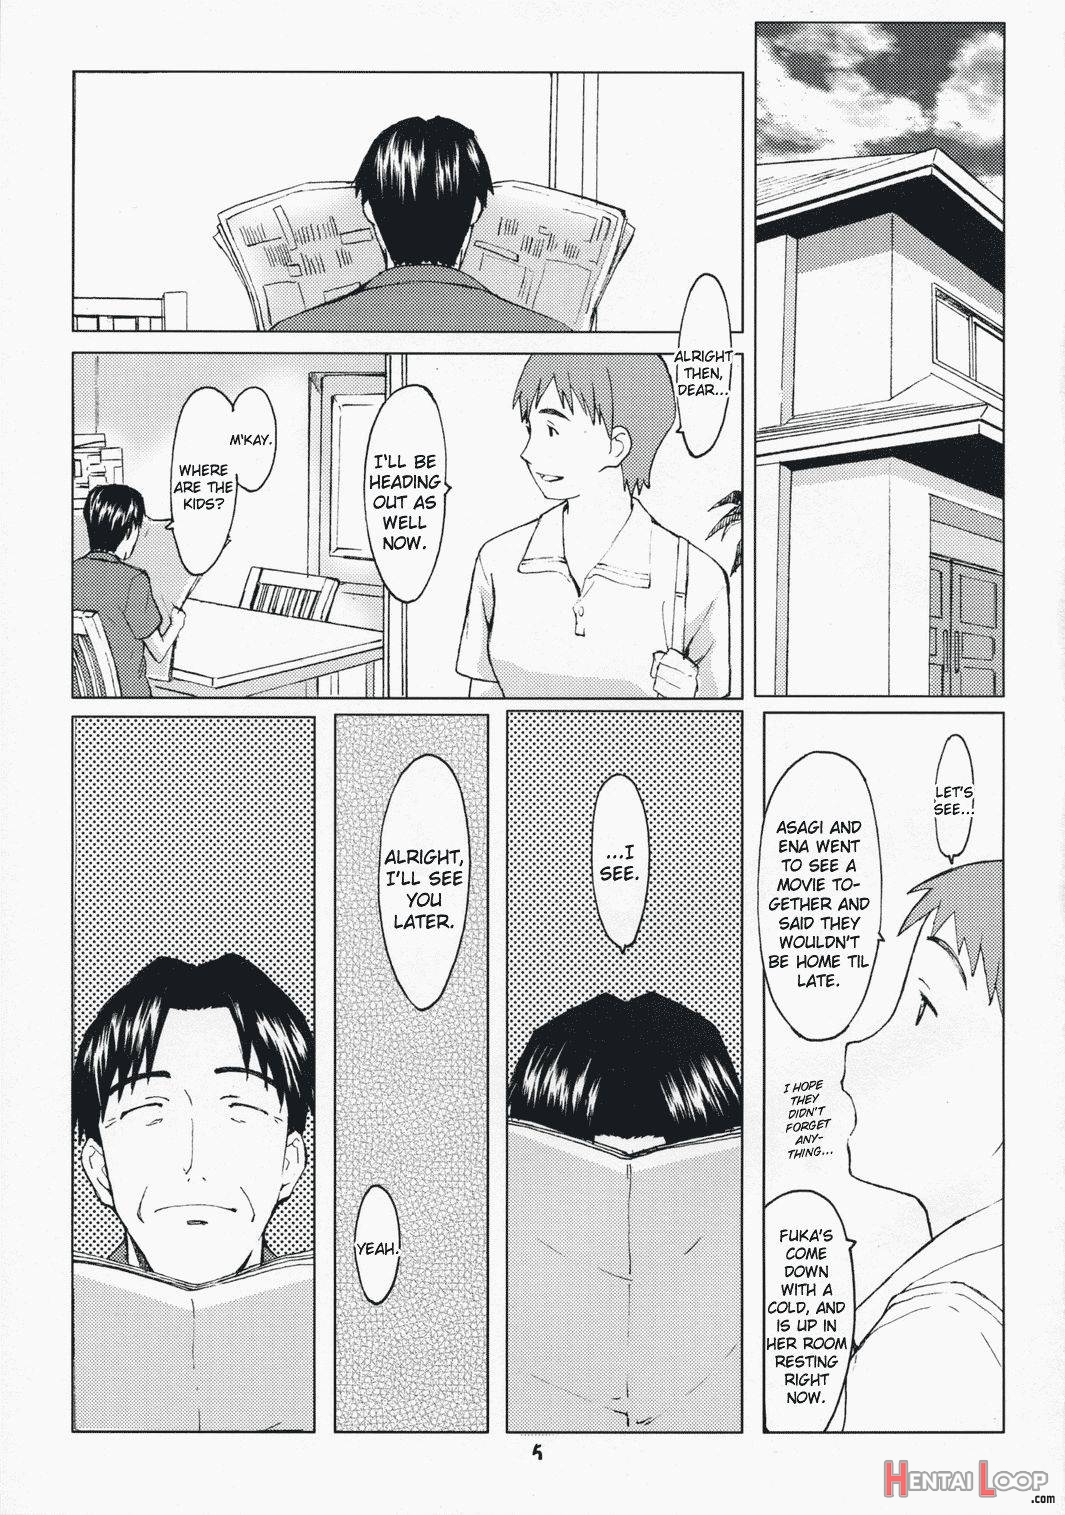 Natsukaze #1 page 2